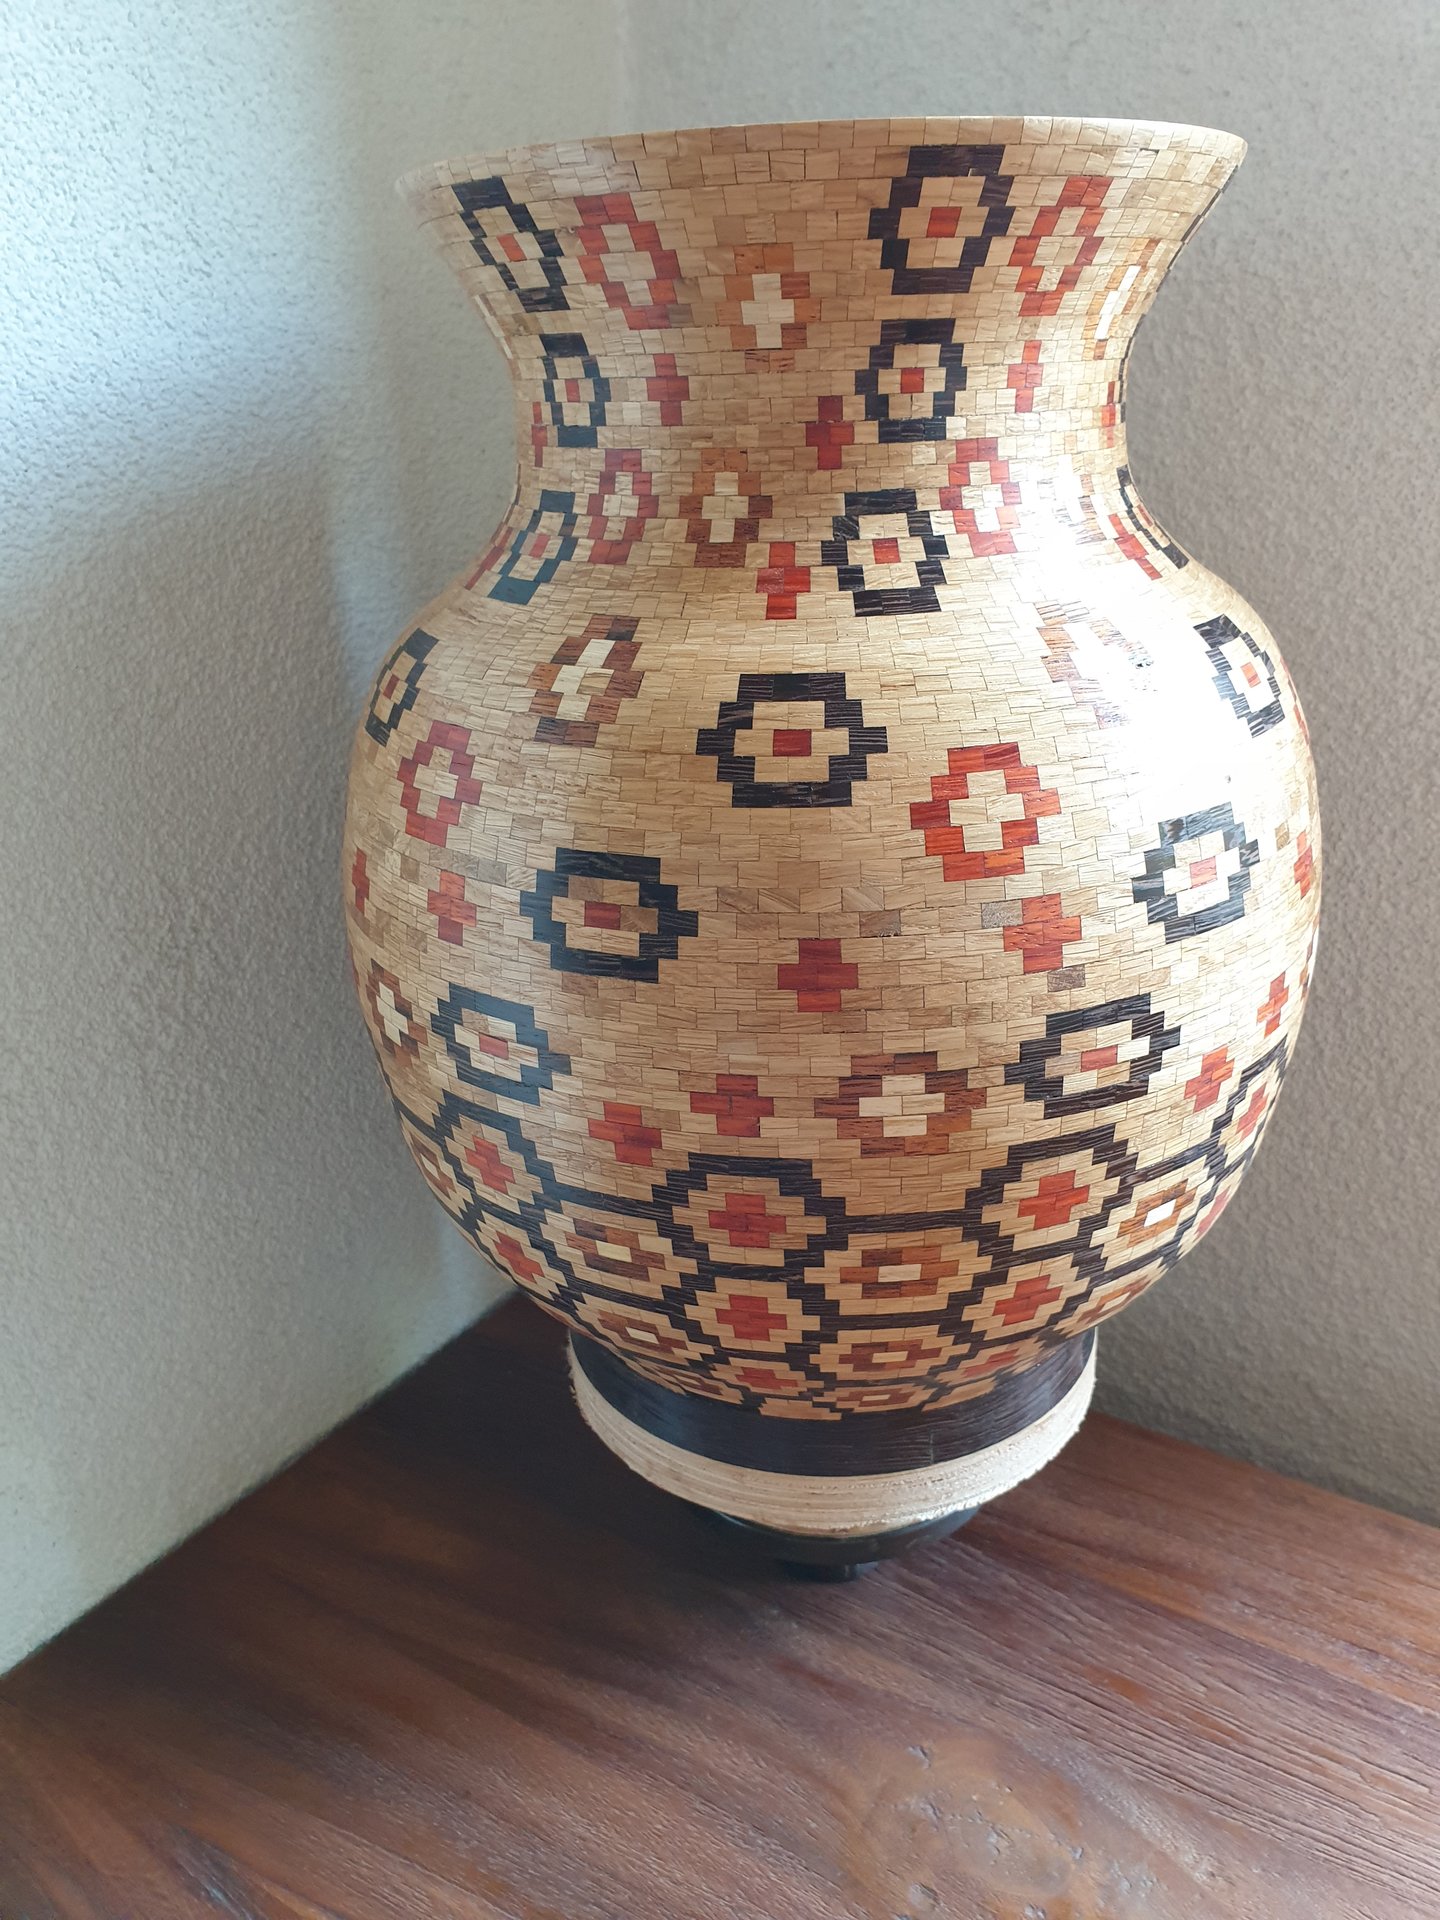 segmented vase 6272 pieces